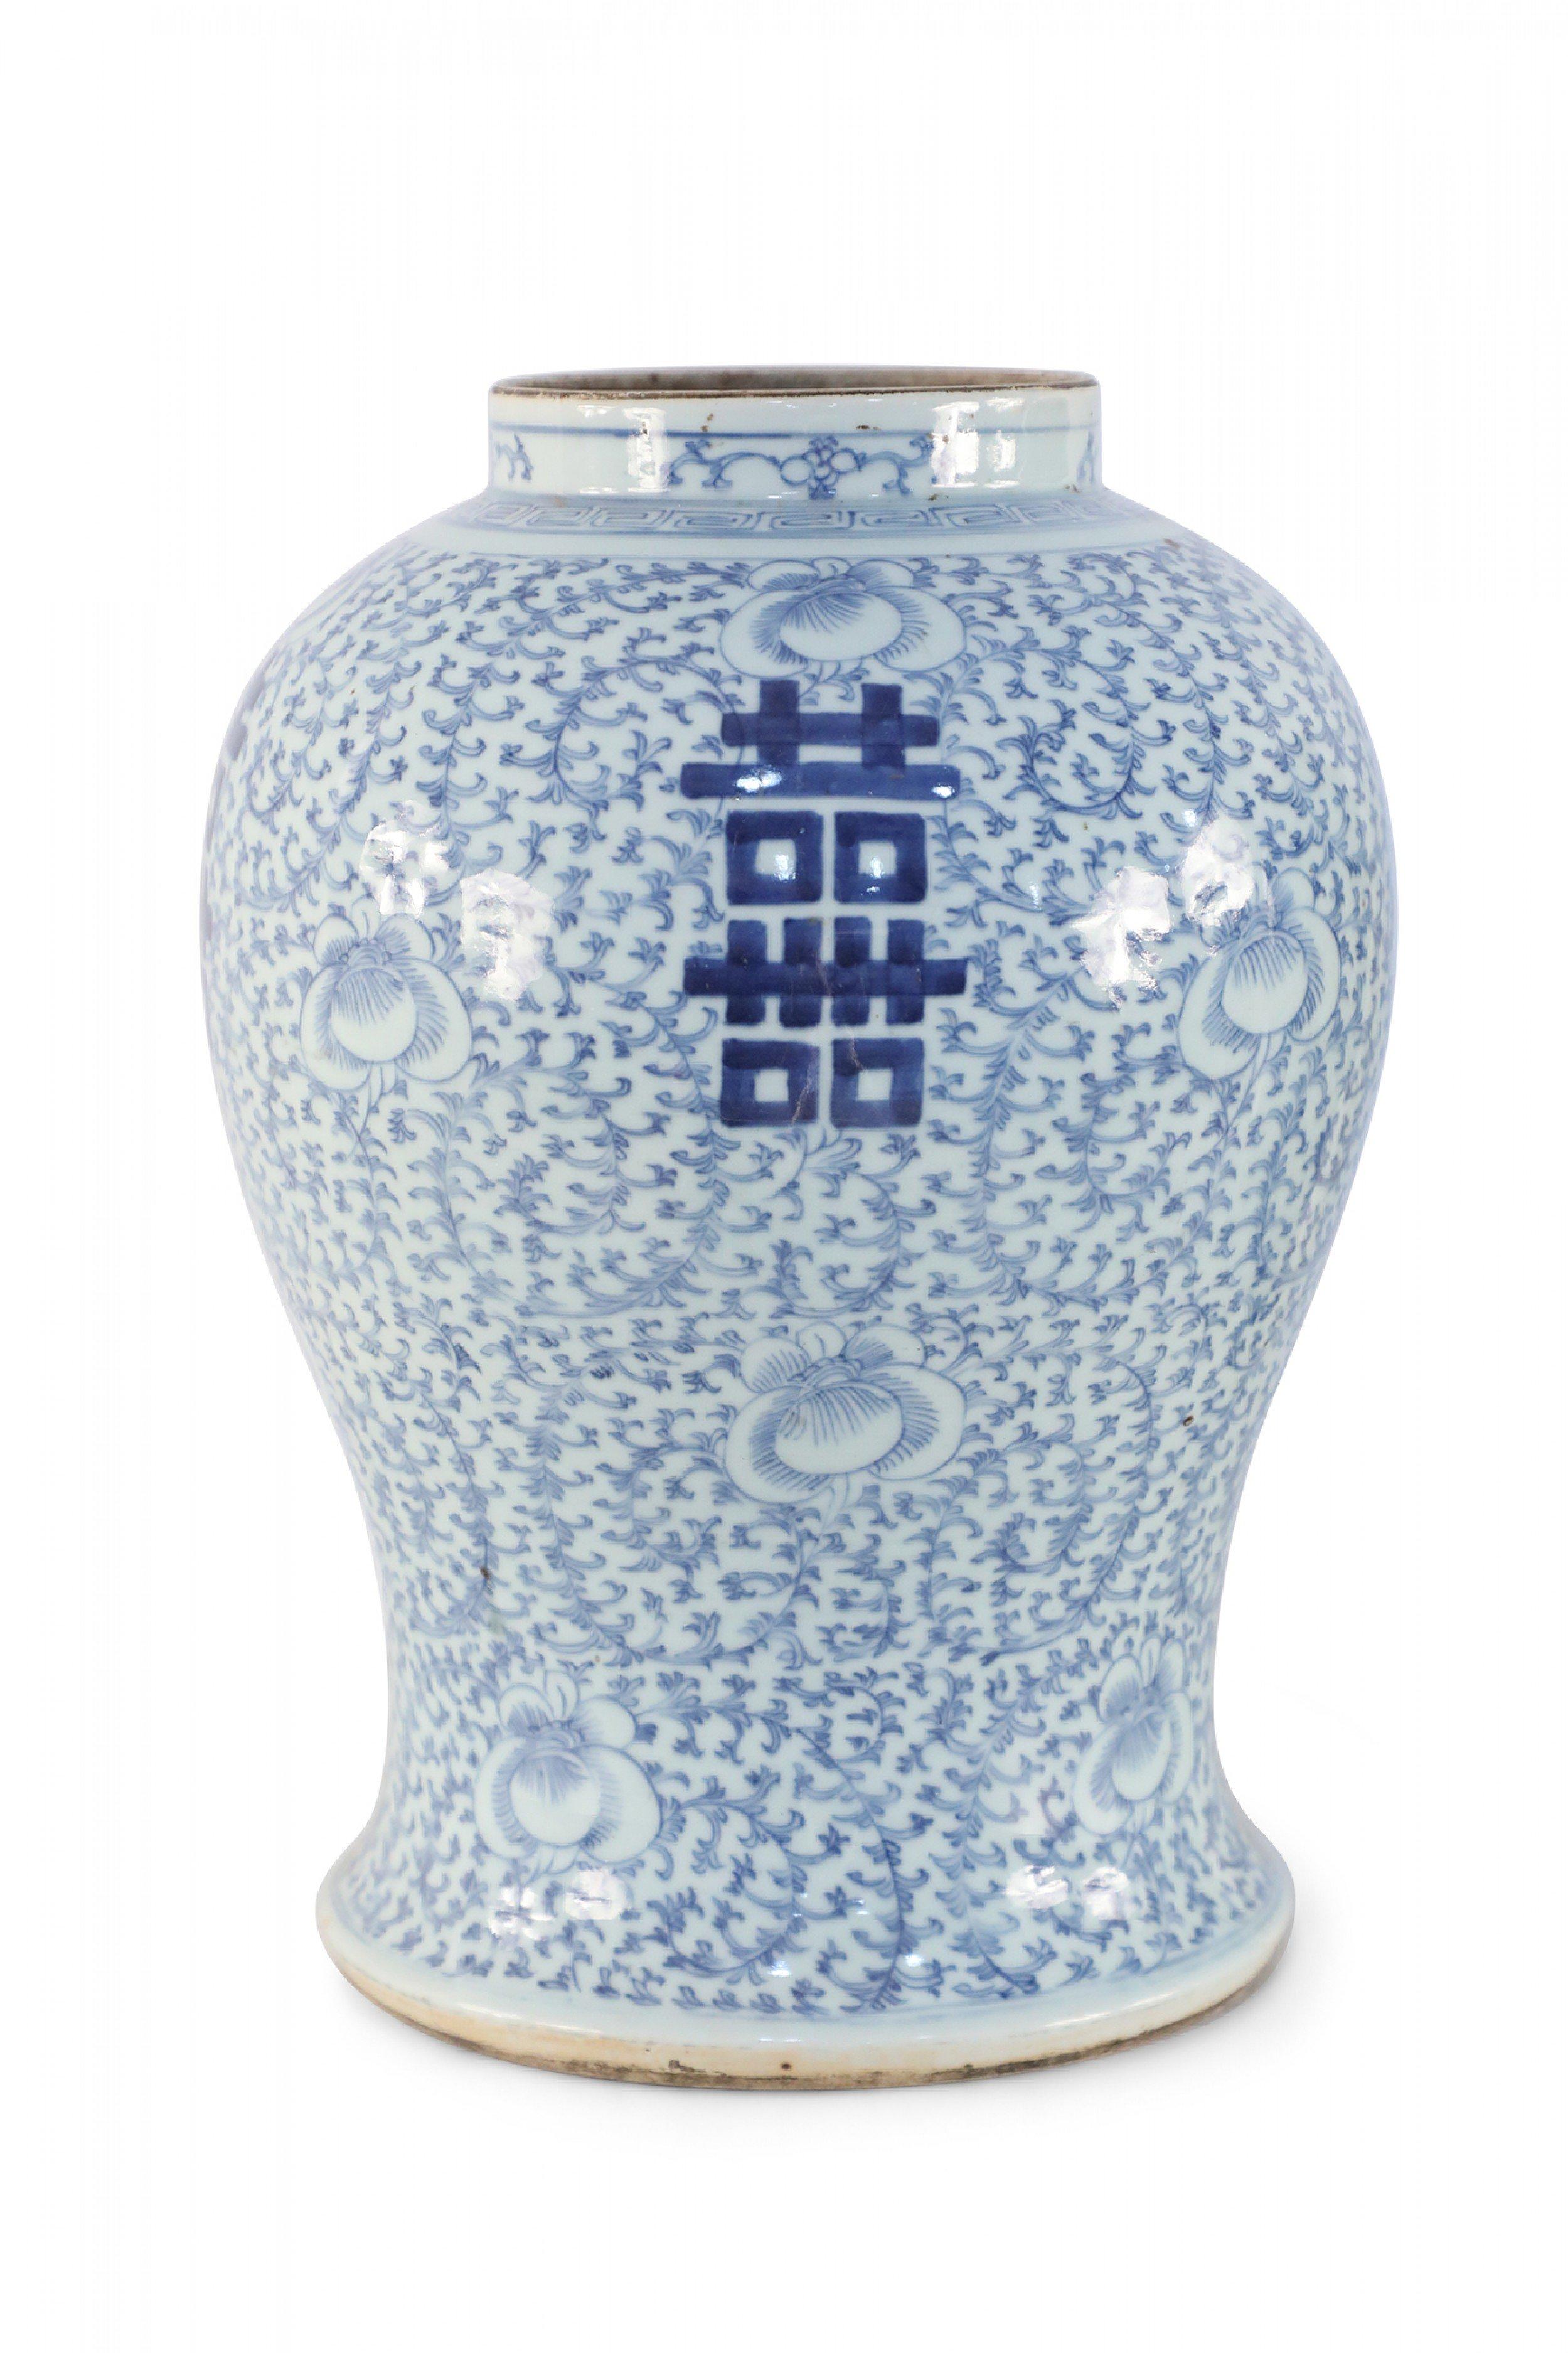 Antike chinesische (frühes 20. Jahrhundert) cremefarbene Porzellanvase in Form einer Urne mit hellblauem Dekor, zarten Ranken- und Blumenmotiven und fetten Schriftzeichen auf 4 Seiten.
 